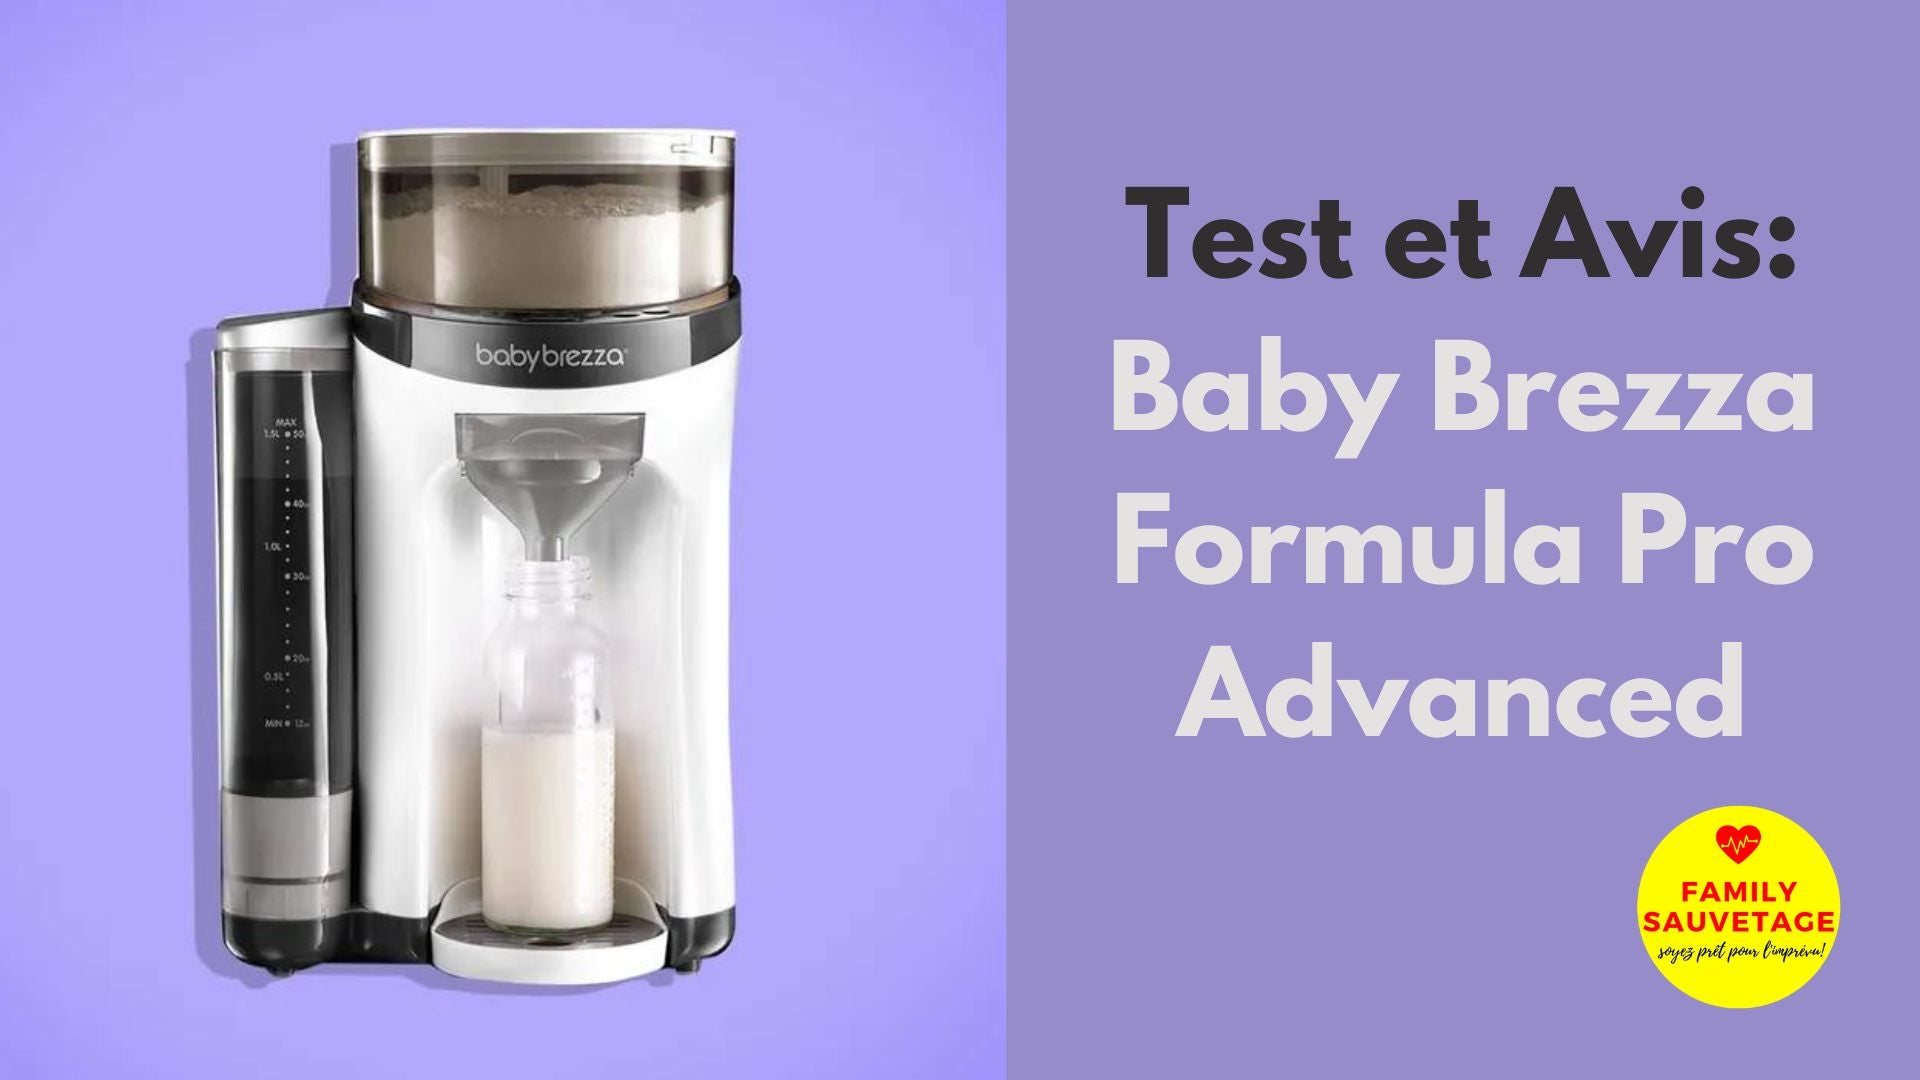 Baby Brezza Formula Pro Advanced - Chauffe-biberon Baby Brezza sur